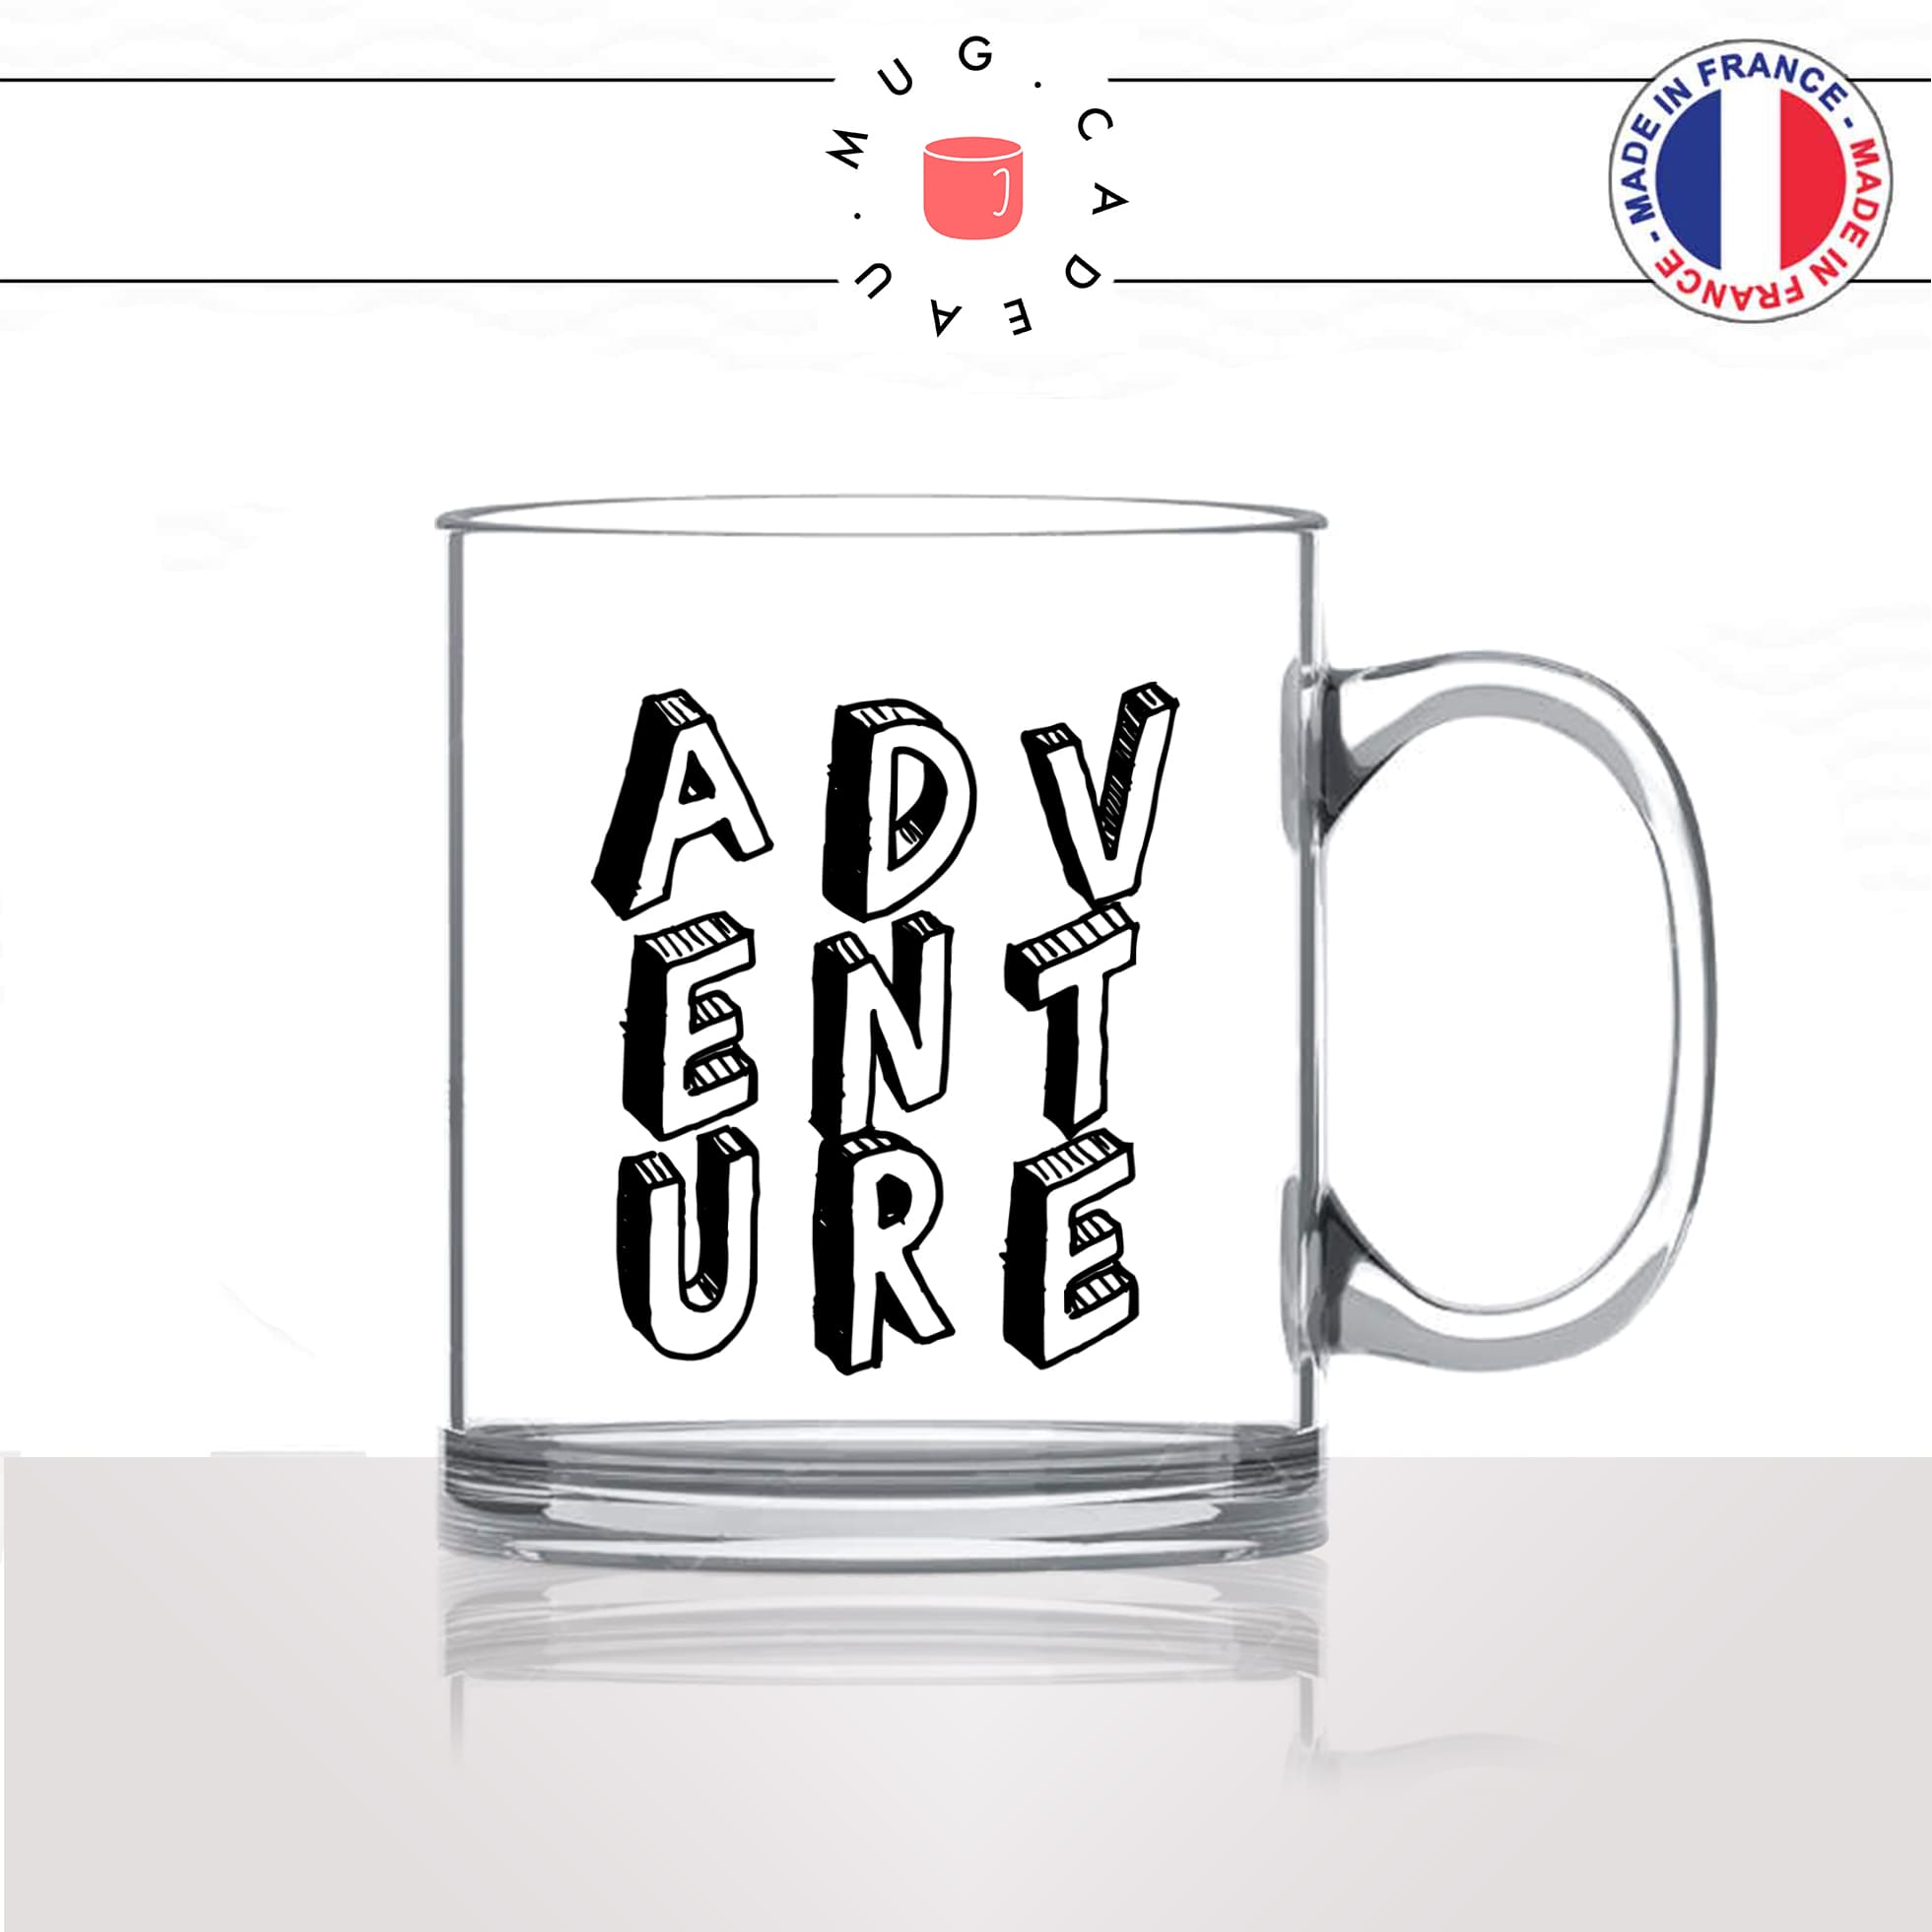 mug-tasse-en-verre-transparent-glass-adventure-aventure-anglais-voyage-travel-free-avion-vacance-influenceur-humour-idée-cadeau-fun-cool-café-thé2